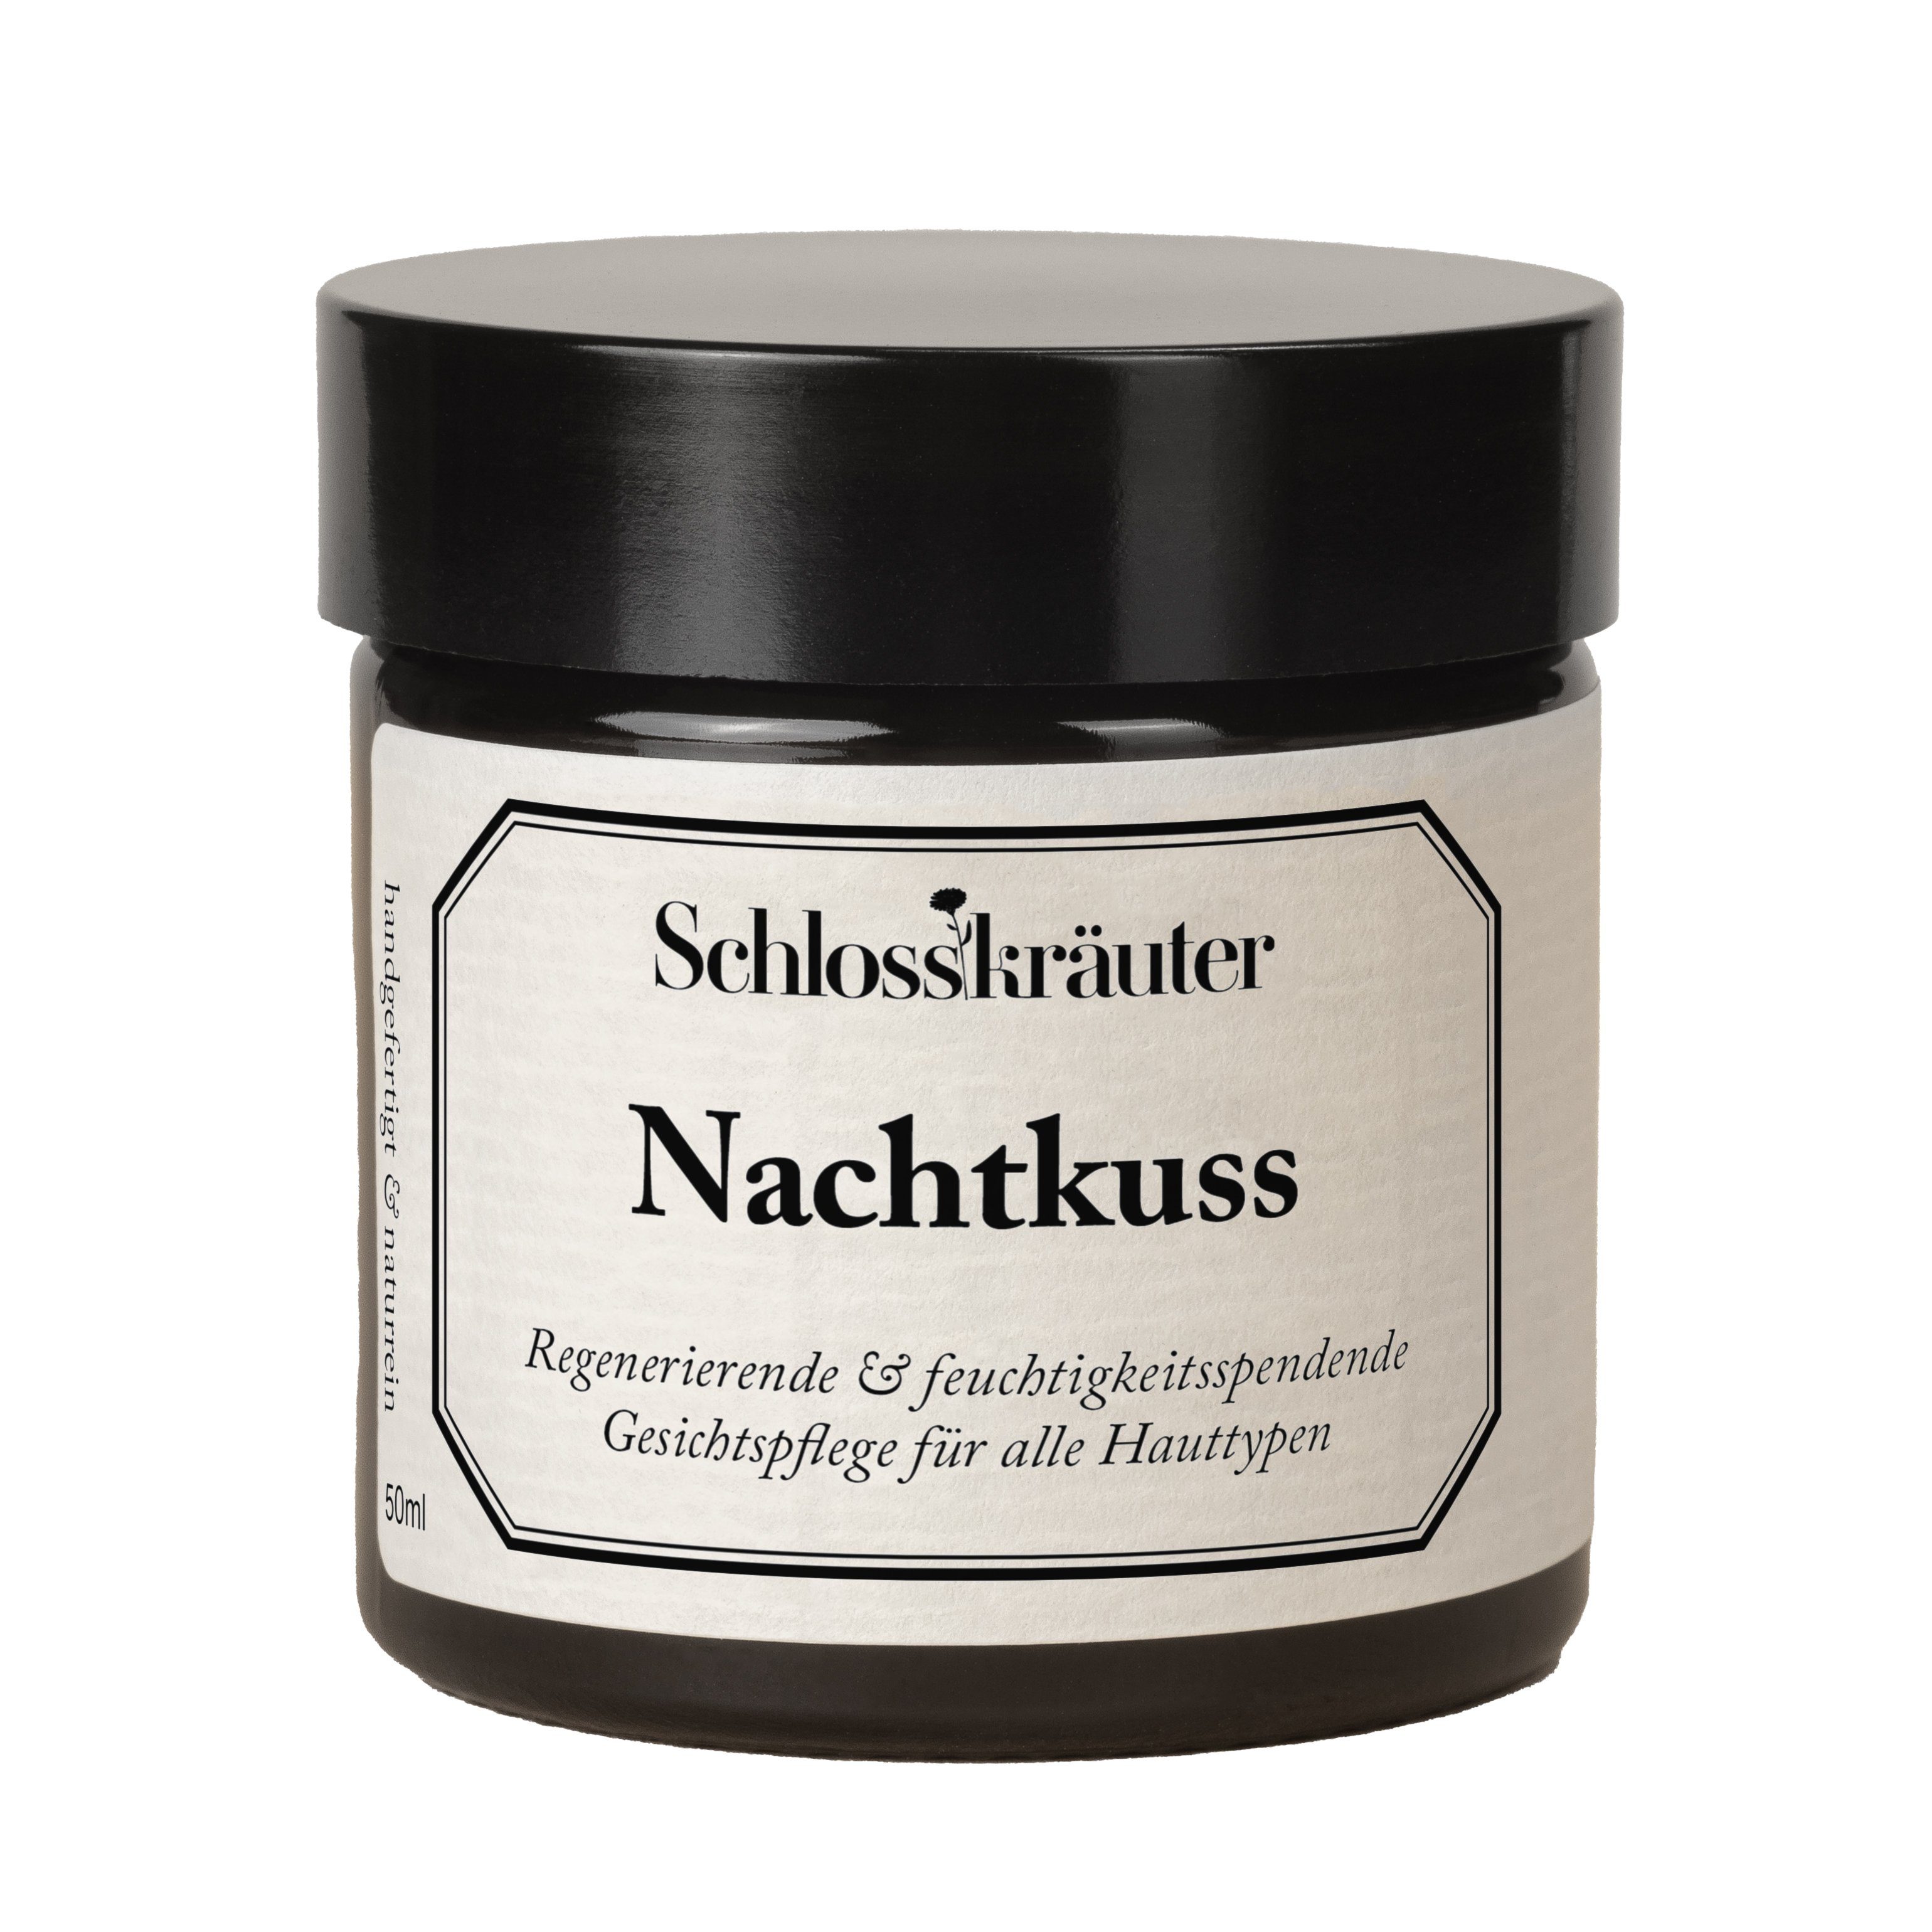 Schlosskräuter Nachtcreme Nachtkuss Gesichtscreme, Reichhaltige Nachtcreme für alle Hauttypen